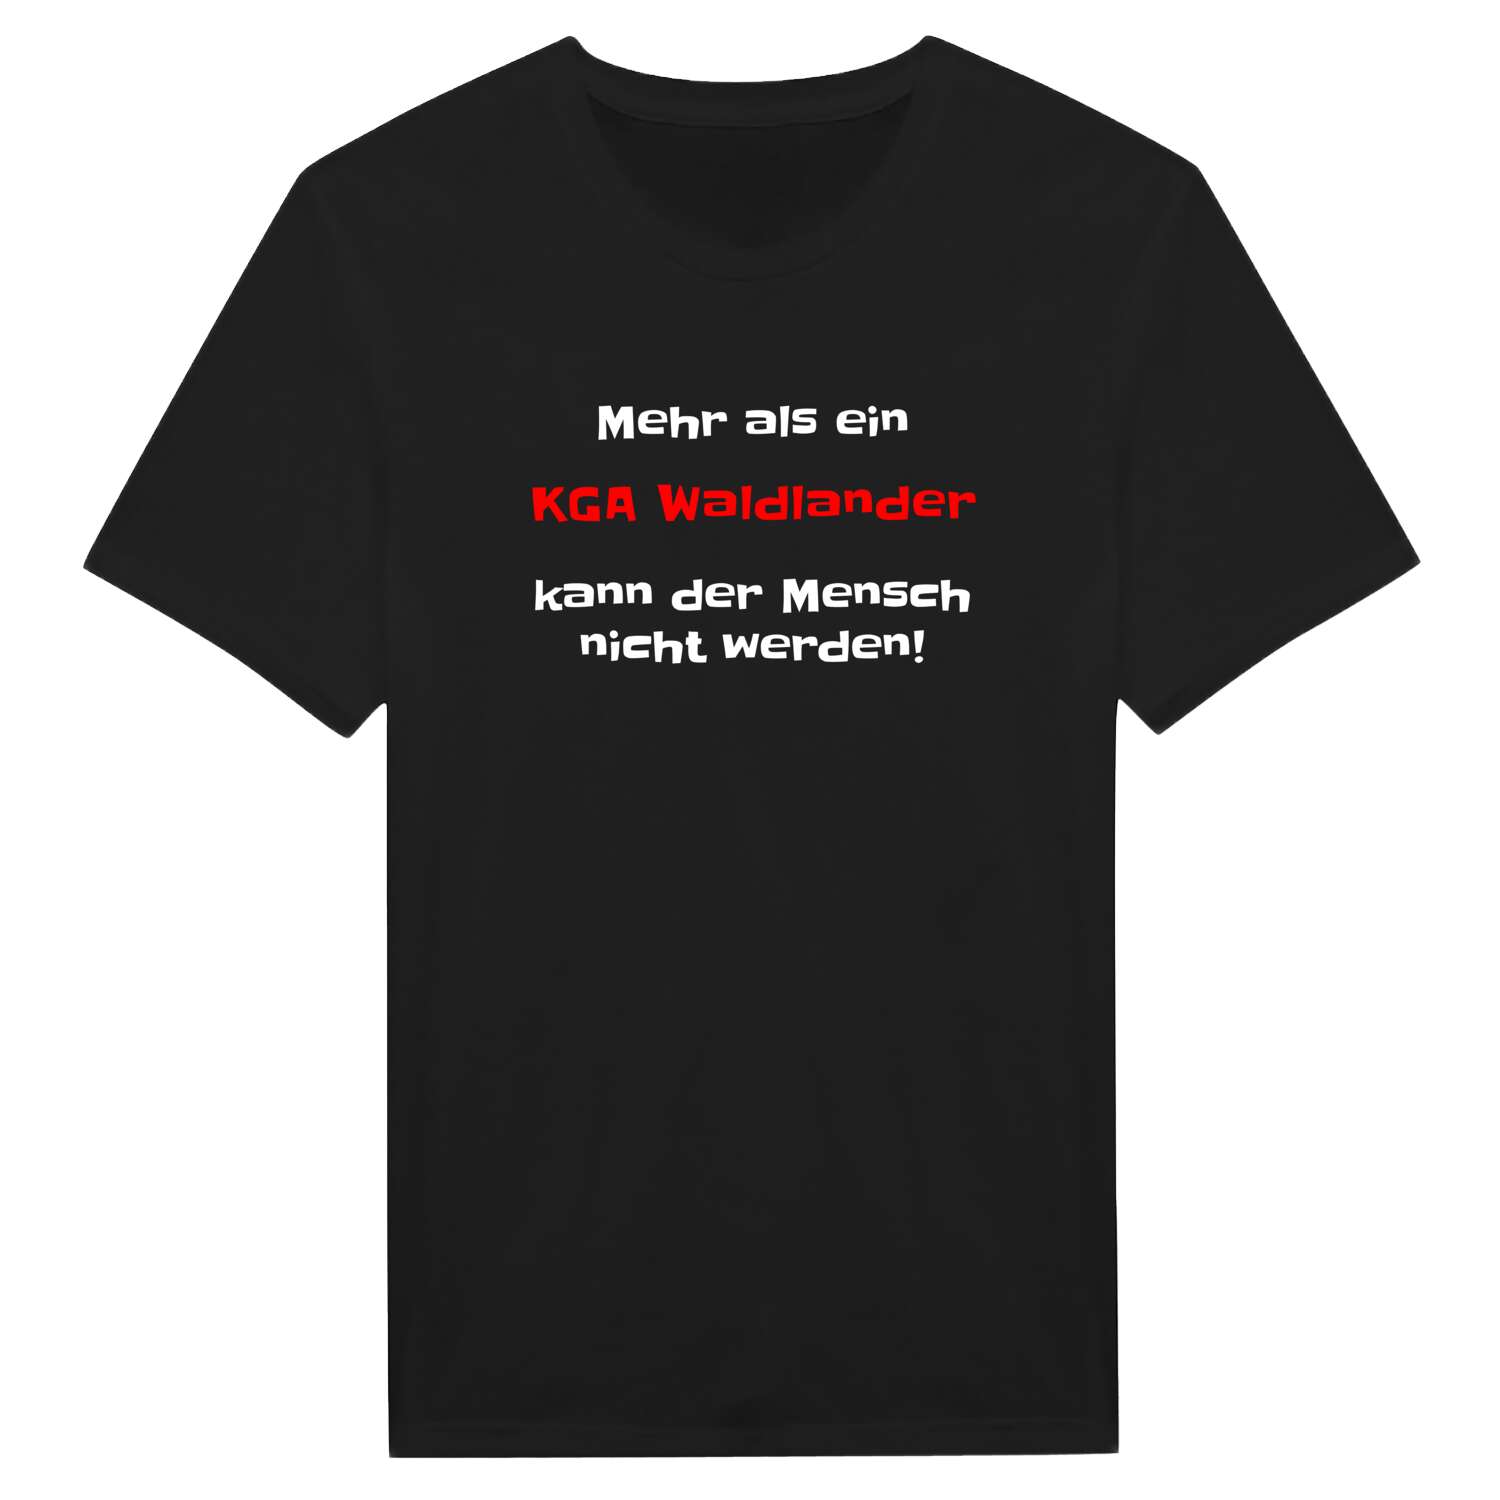 KGA Waldland T-Shirt »Mehr als ein«